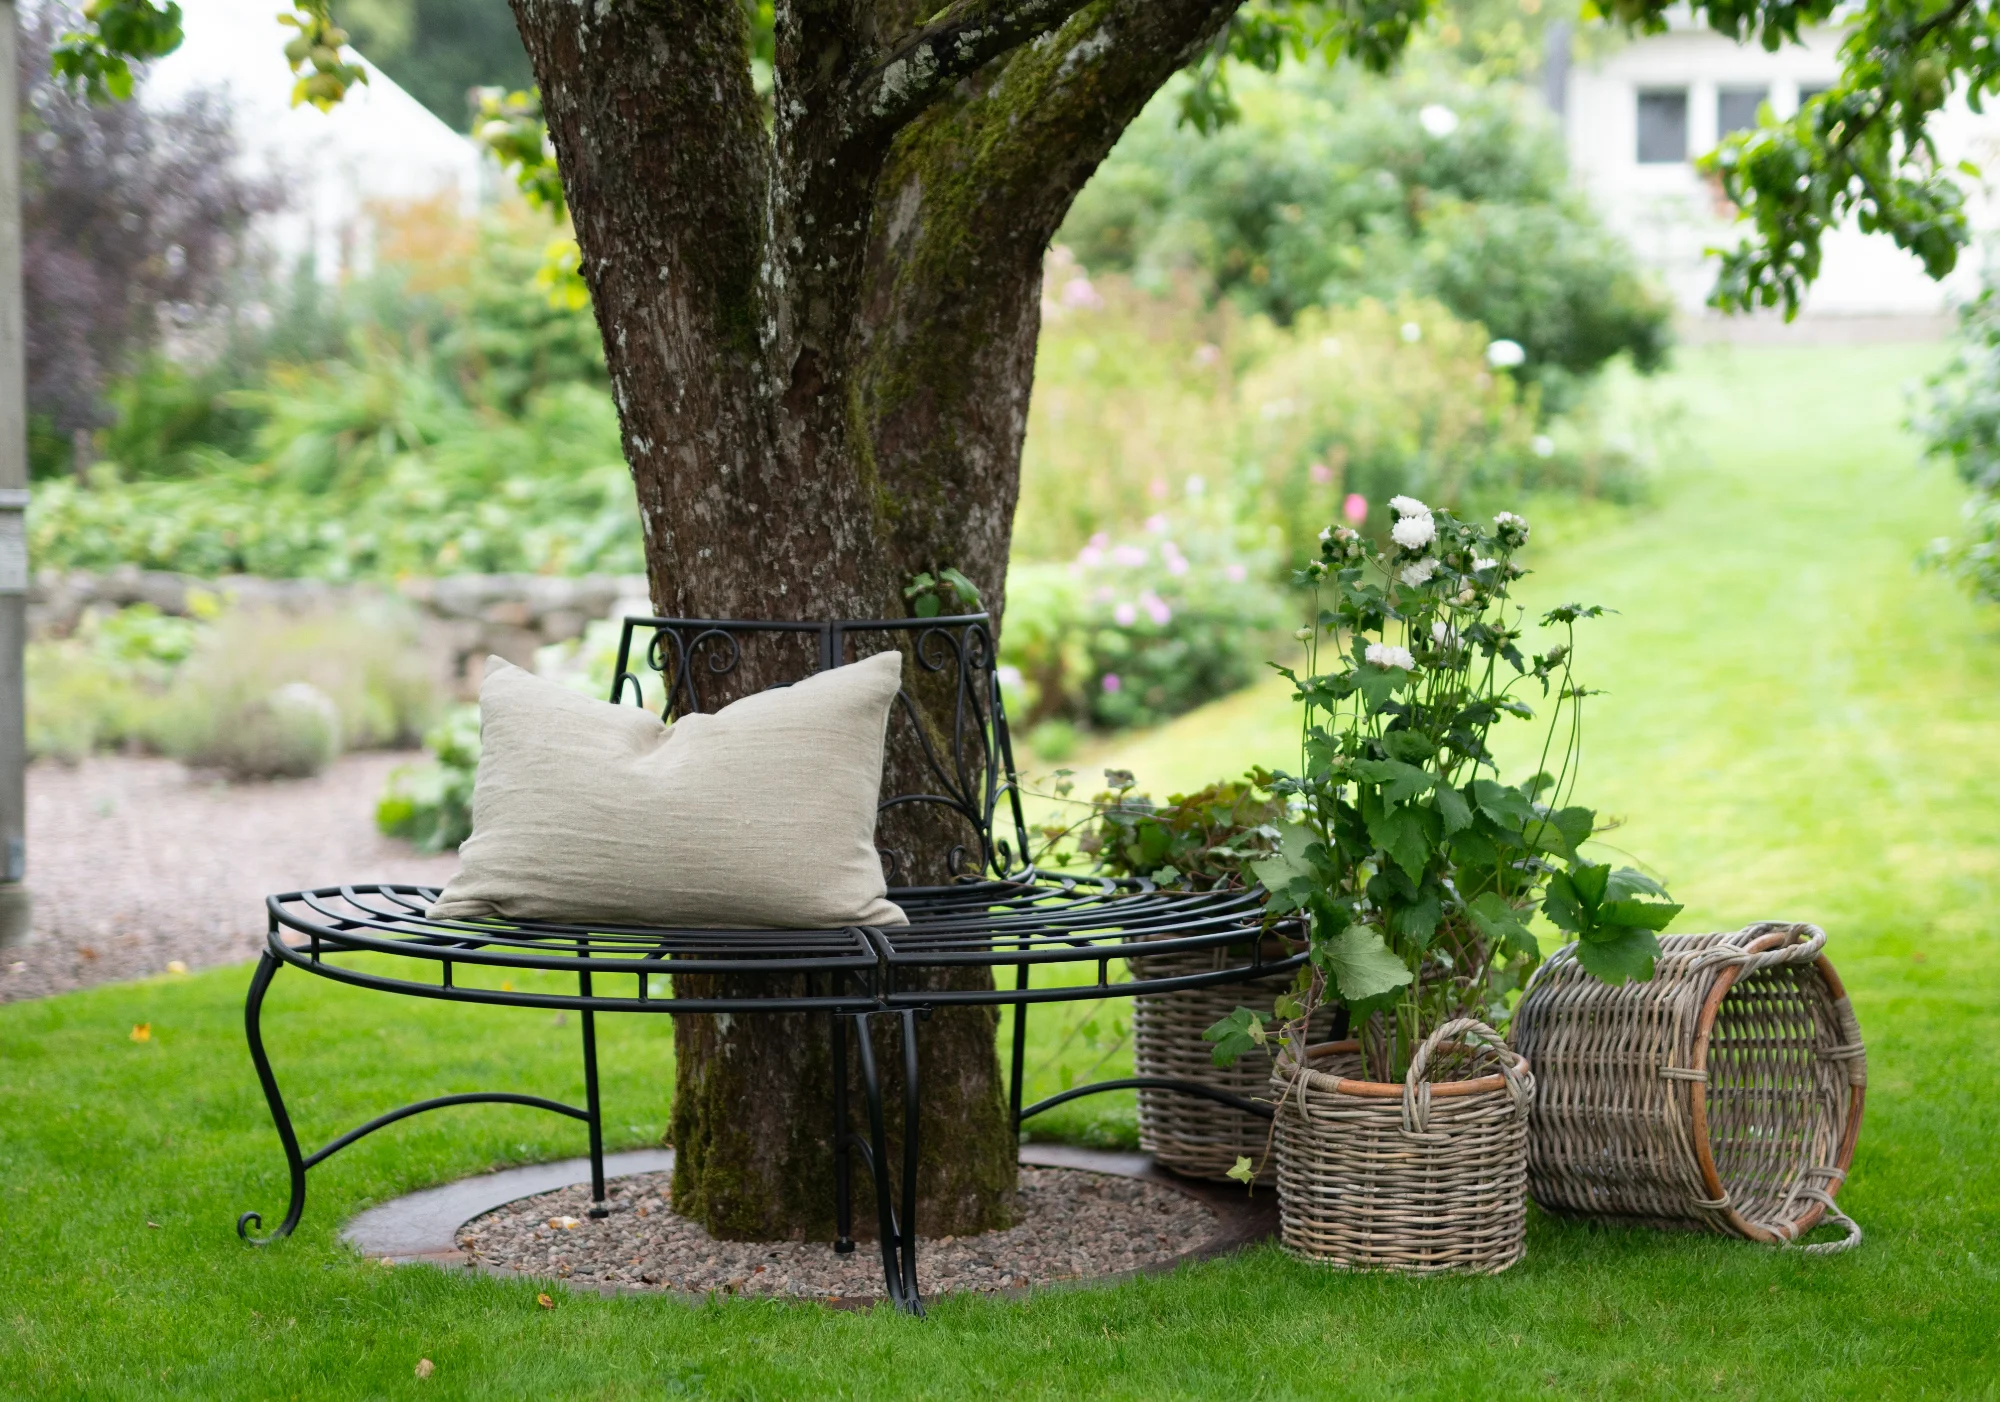 Stilfull trädgårdsmöblering med bekväm bänk under ett frodigt träd, omgivet av grönskande växter och rustika korgar, inspirerar till 'Skapa din drömträdgård'.